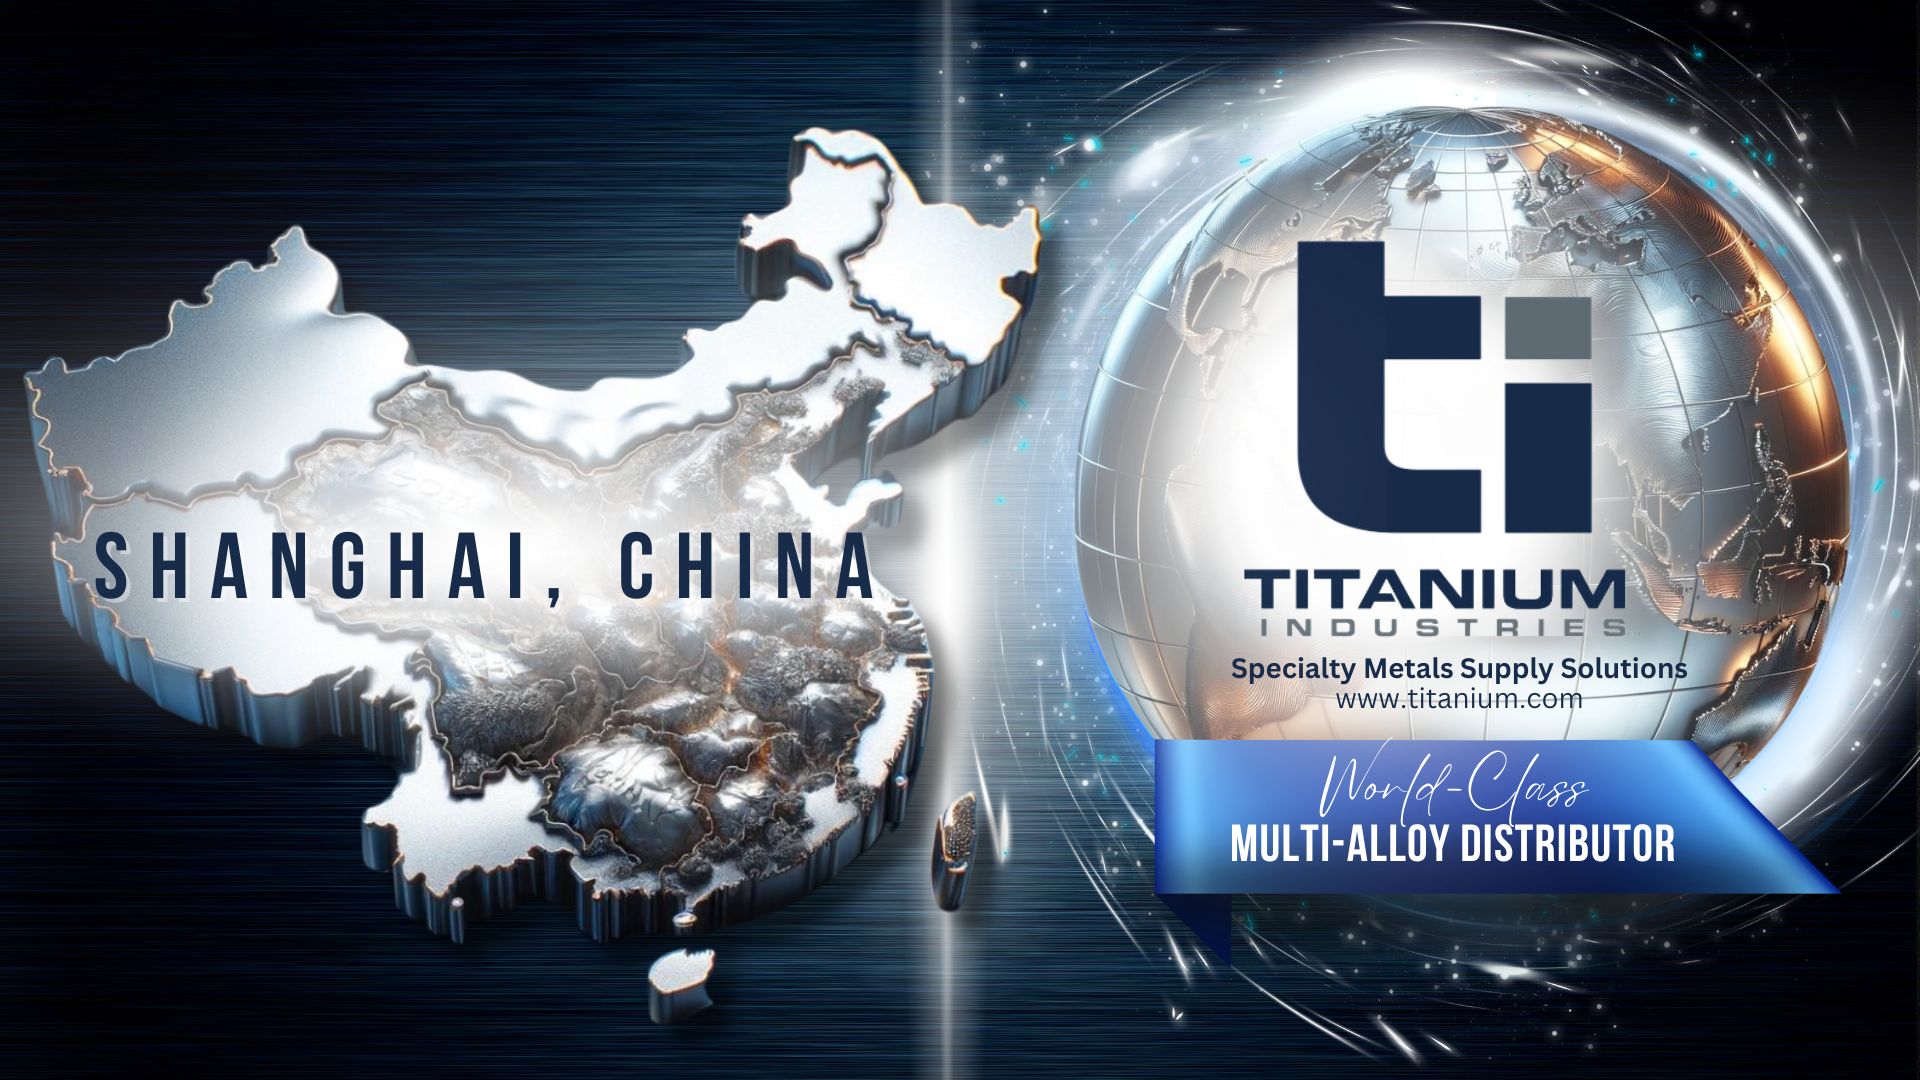 Titanium Industries Asia, Inc. Shanghai, China